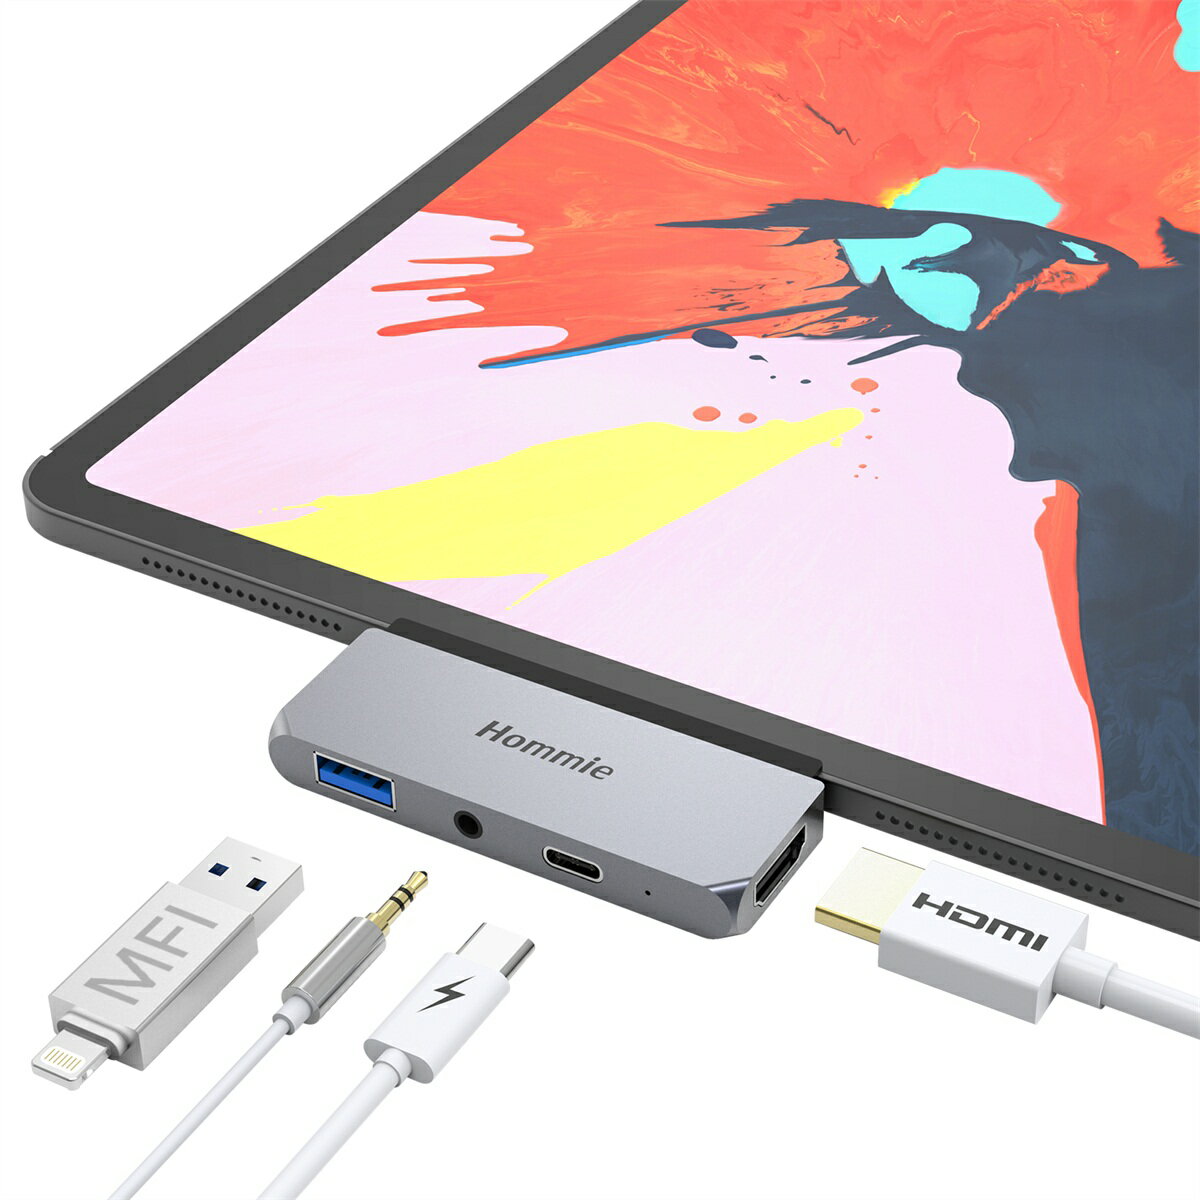 Hommie Type-C ハブ ドッキングステーション USB 3.0 モバイル PD 4K HDMI 高解像 3.5mm ヘッドホンジャック 【2018 iPad Pro/Microsoft Surface Go対応】 USB-Cハブ